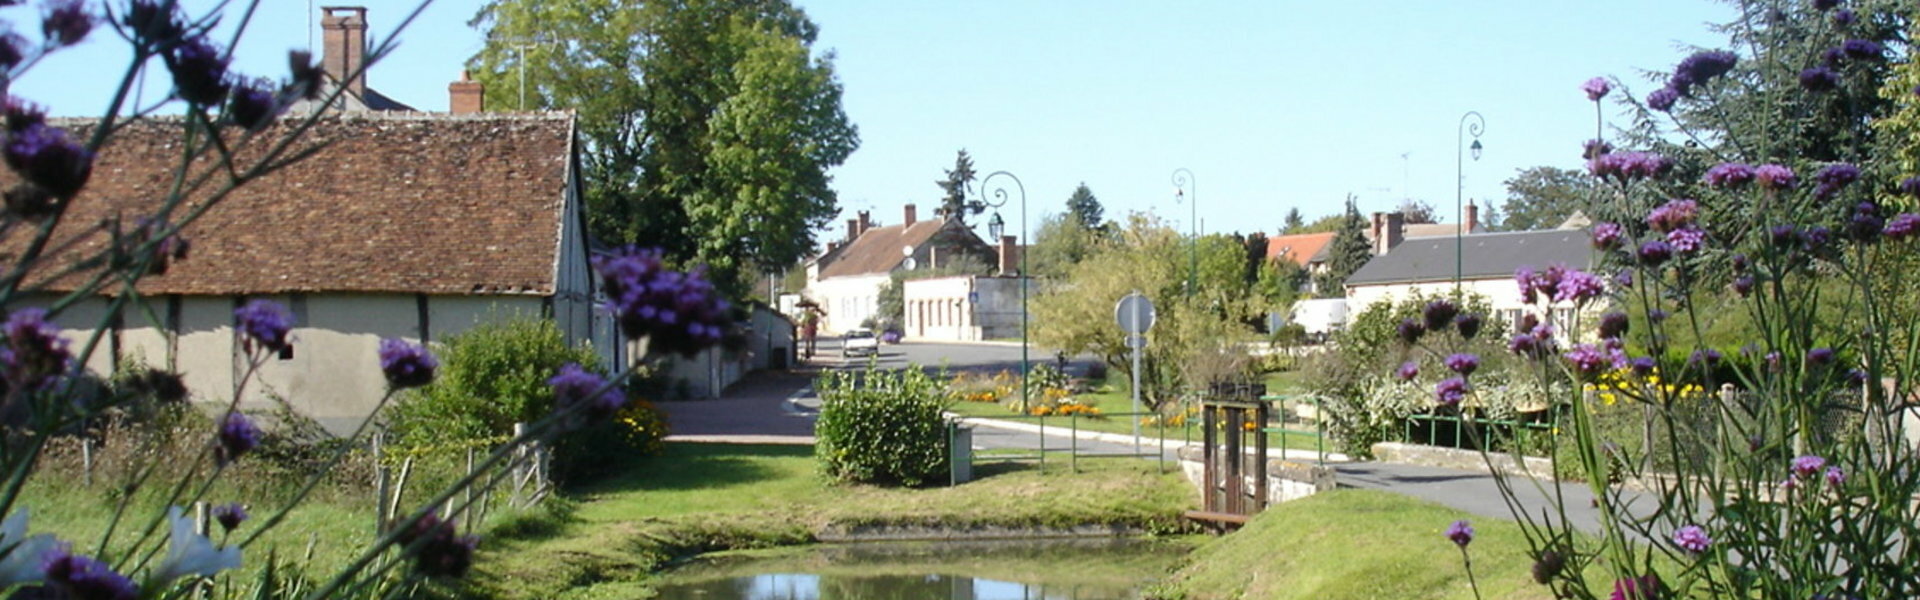 Communauté de Communes Canaux et Forêt en Gâtinais